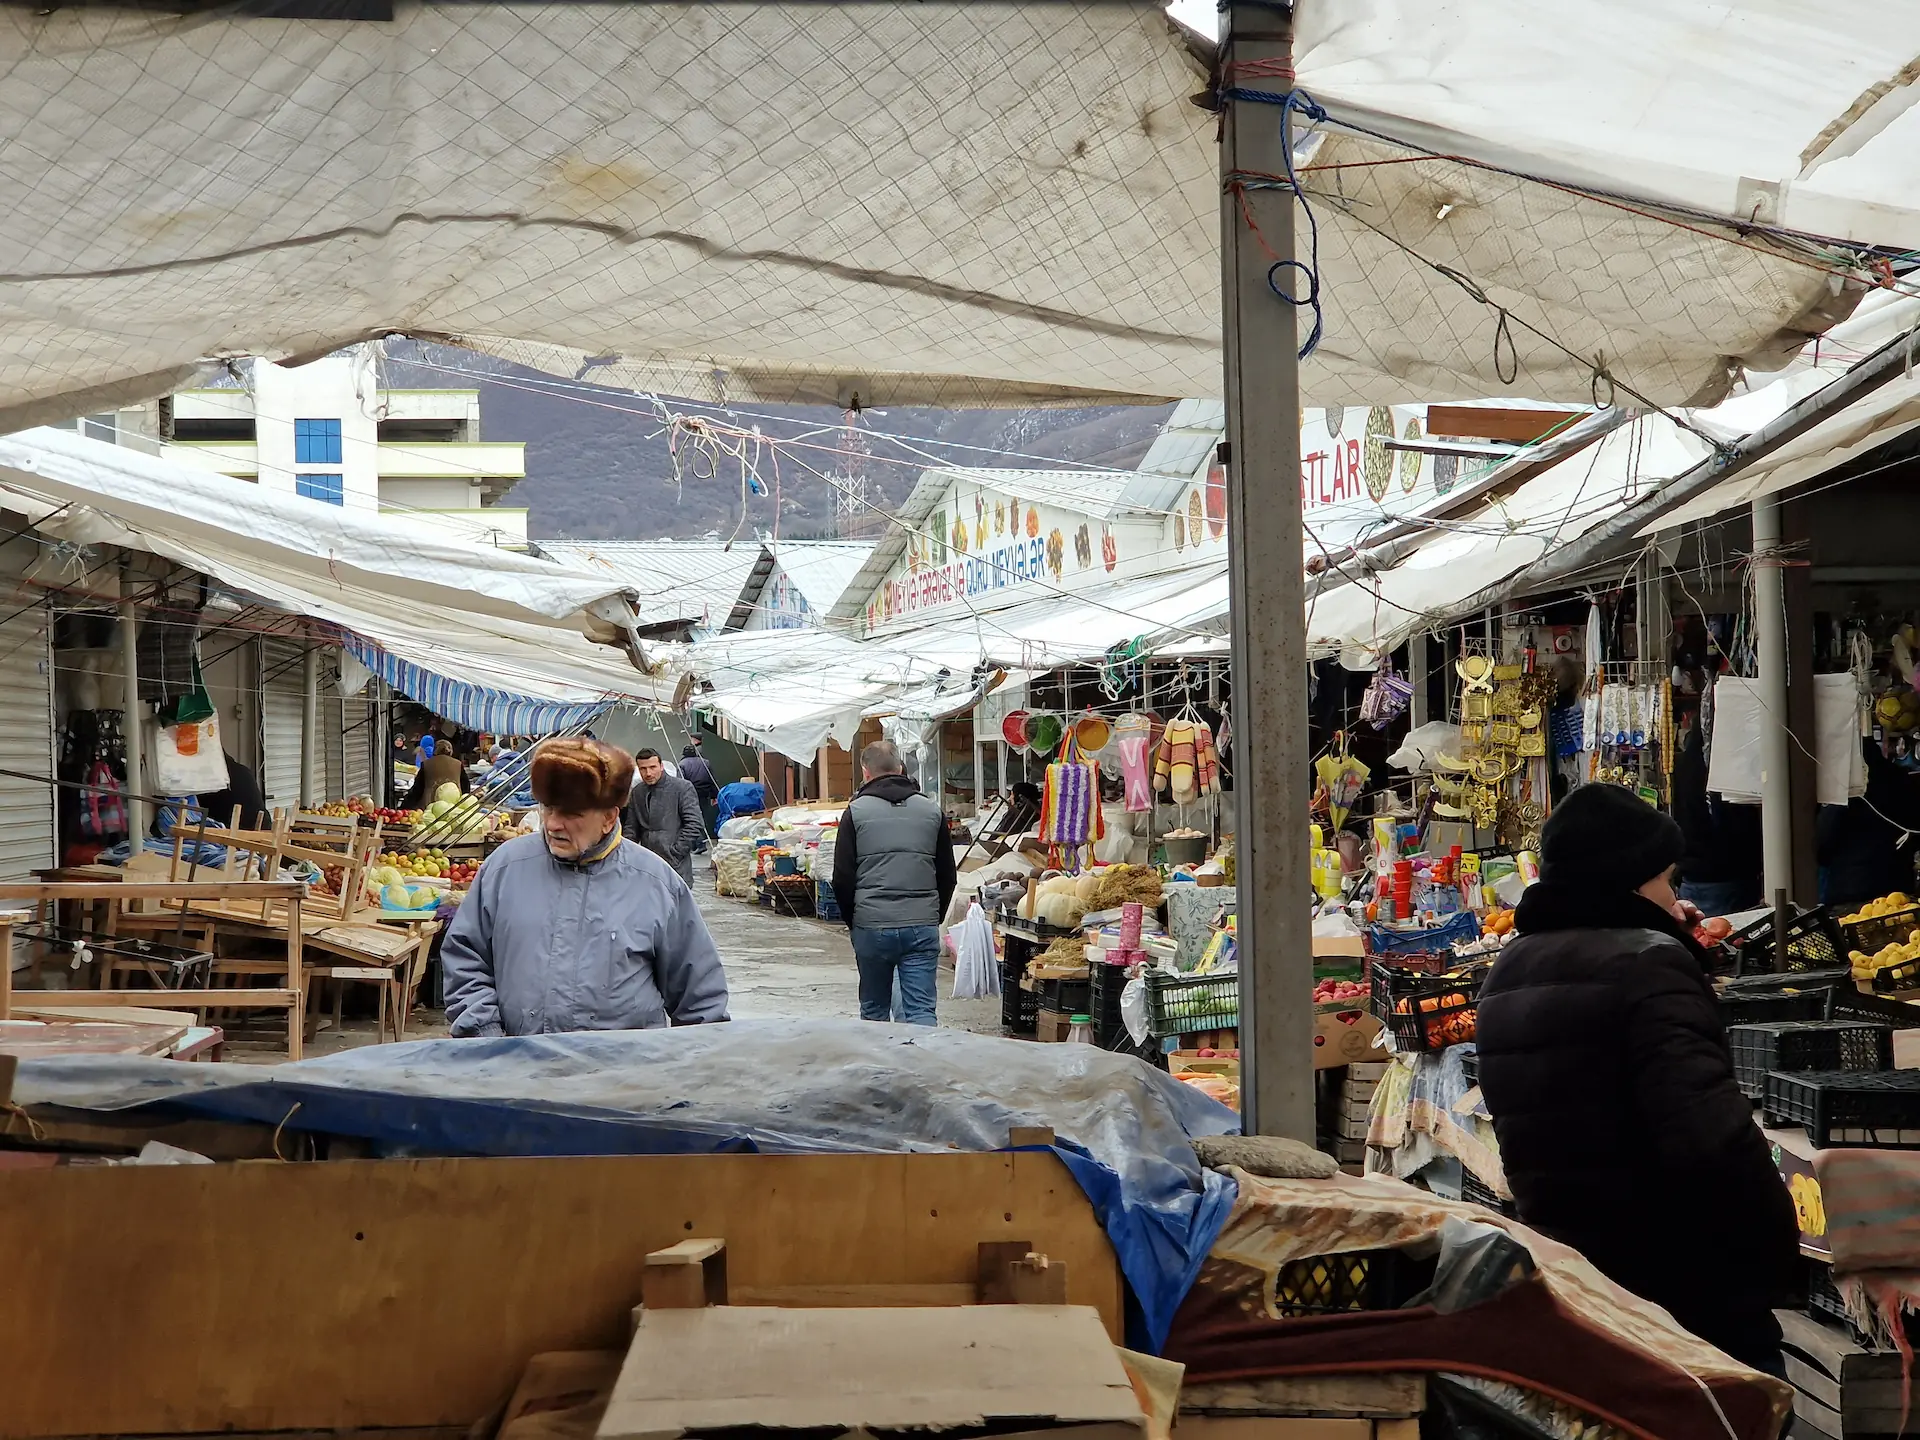 Une ruelle du marché, des vendeurs de légumes sur le côté. On voit un monsieur avec une grosse veste et un chapeau en fourrure marcher dans notre direction.